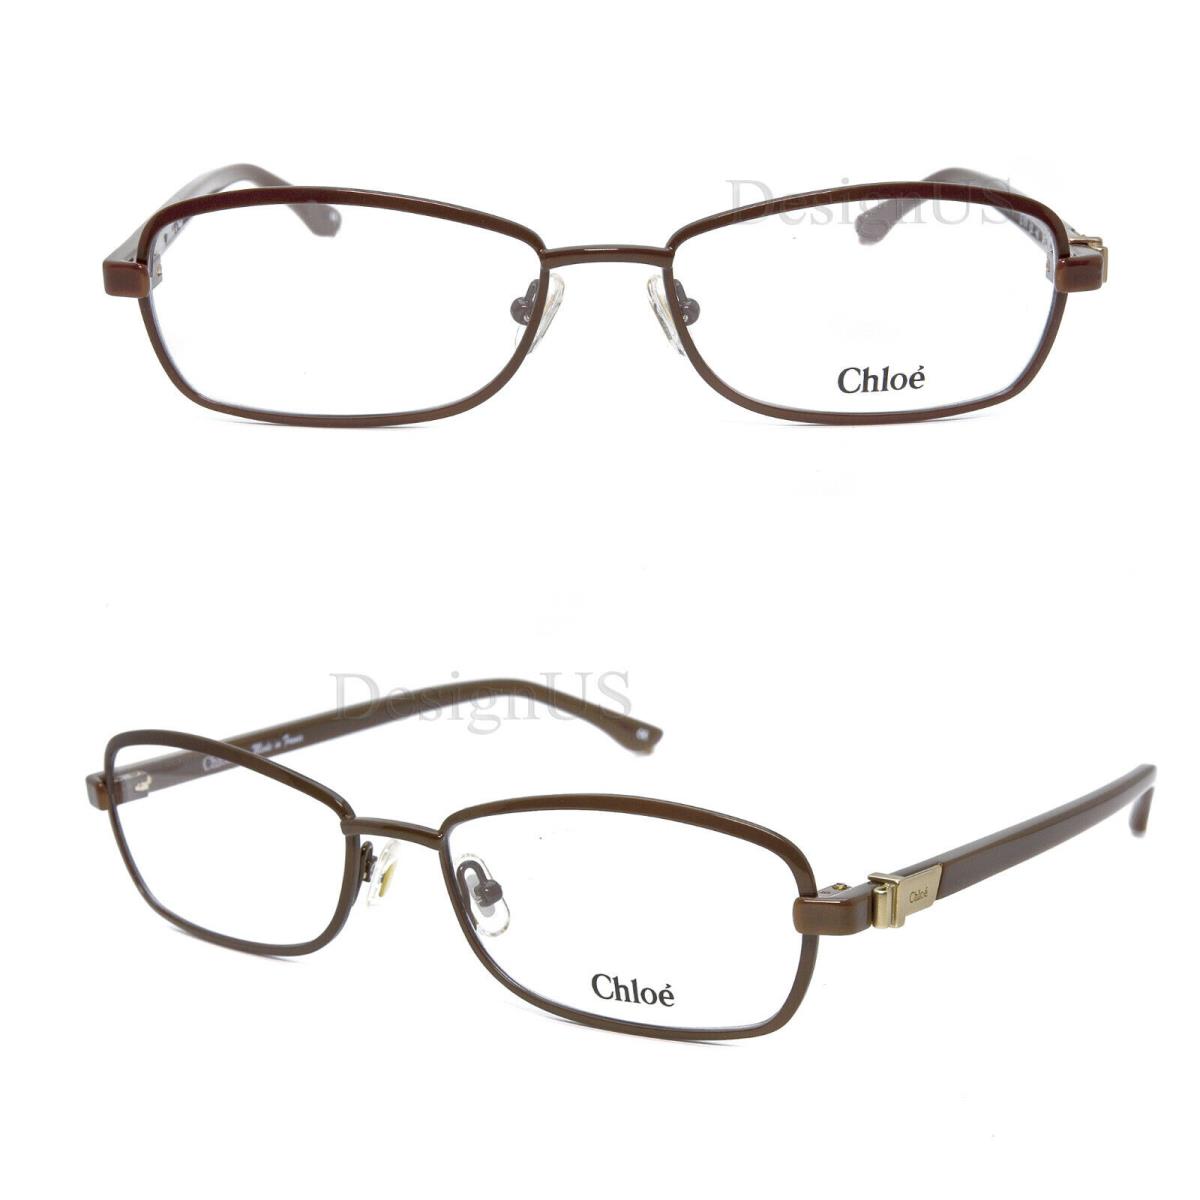 Chloe CL1214 C02 Brown 54/16/140 Eyeglasses Made in France